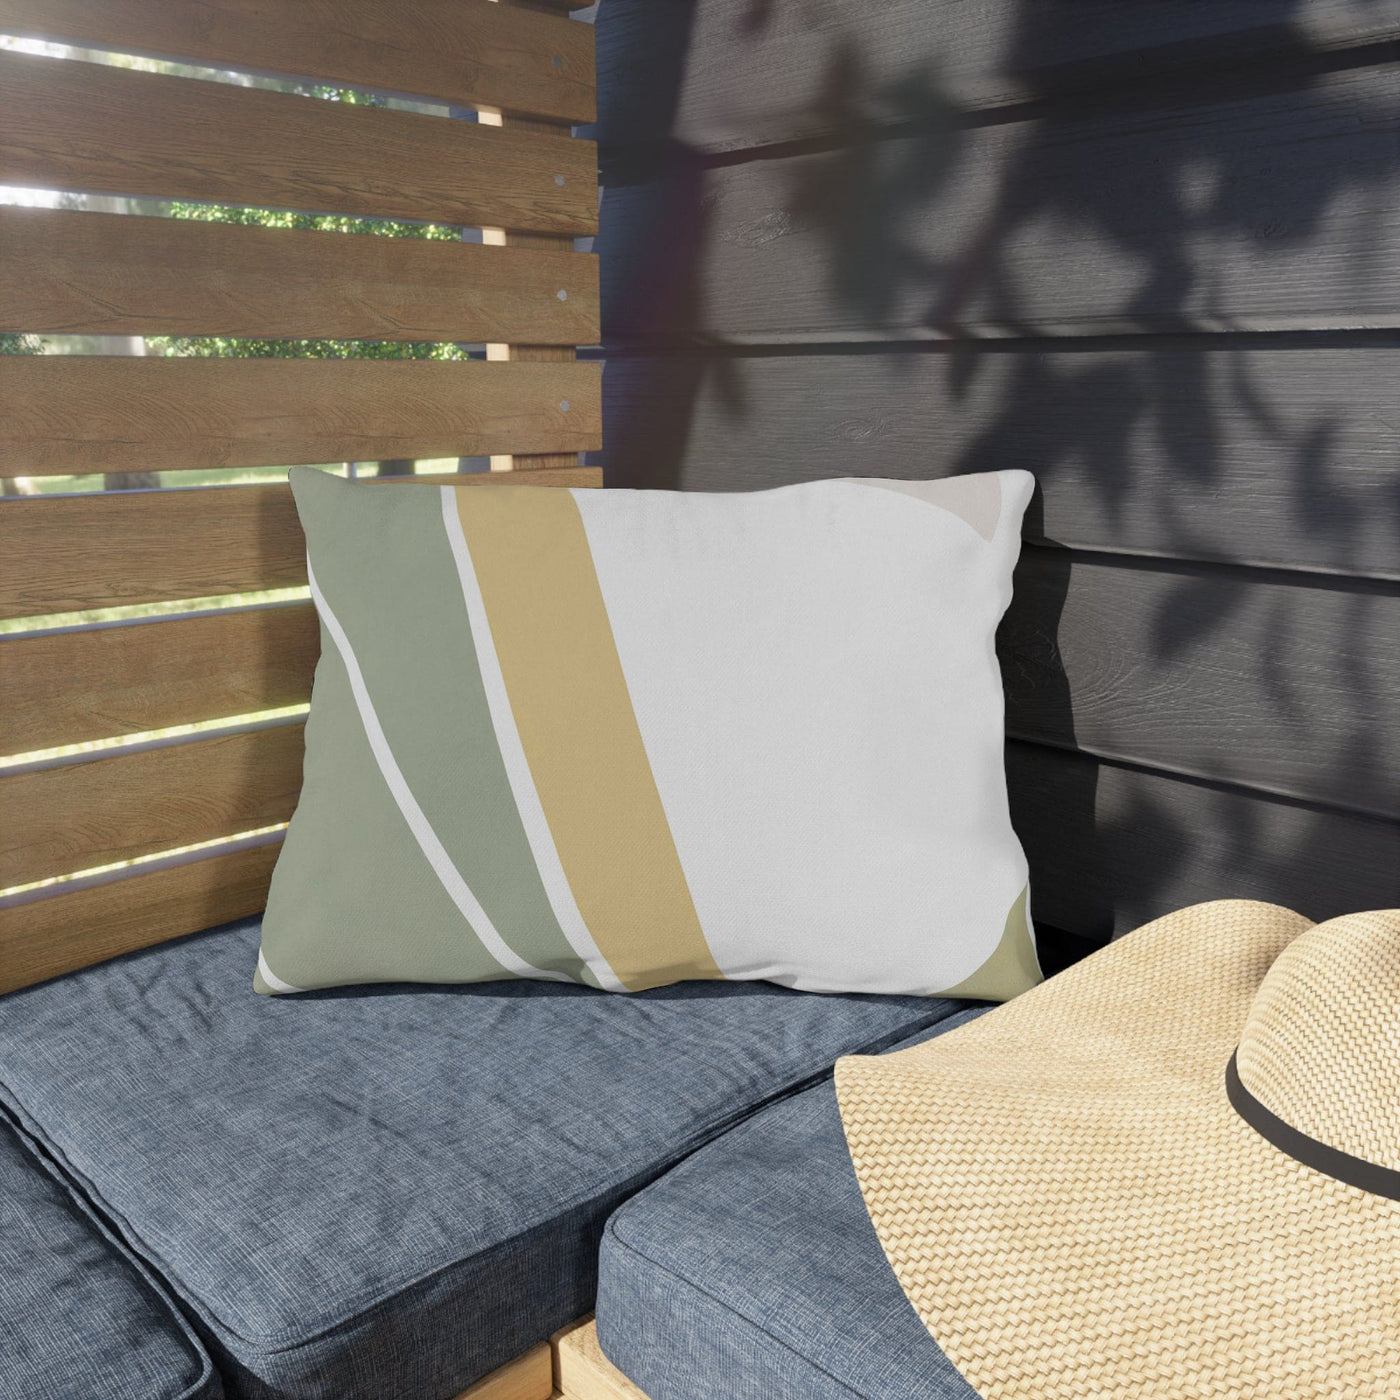 Outdoor Throw Pillow Green Abstract Design - Home Decor